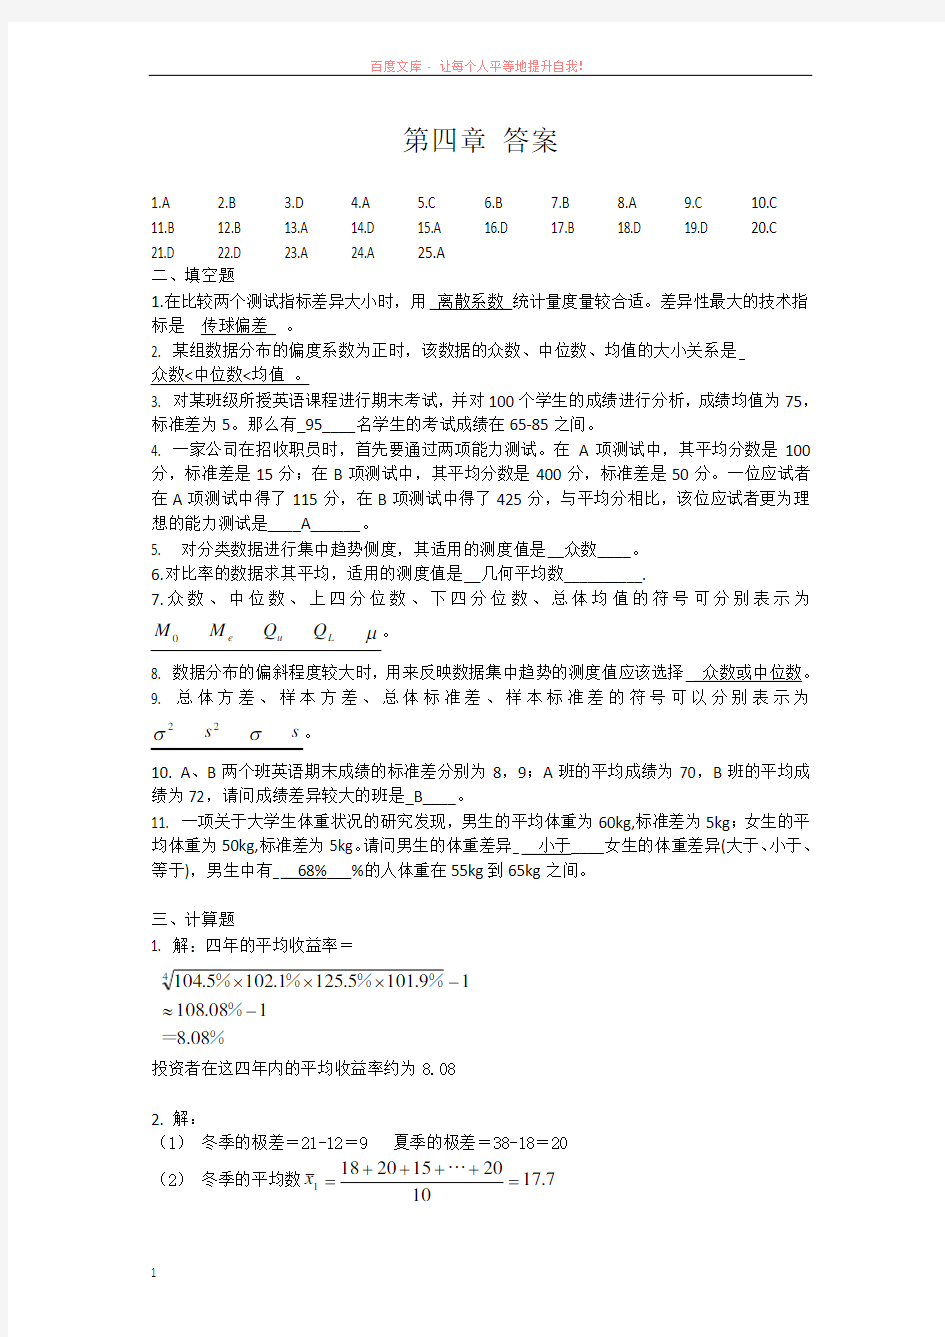 贾俊平第四版统计学-第四章答案